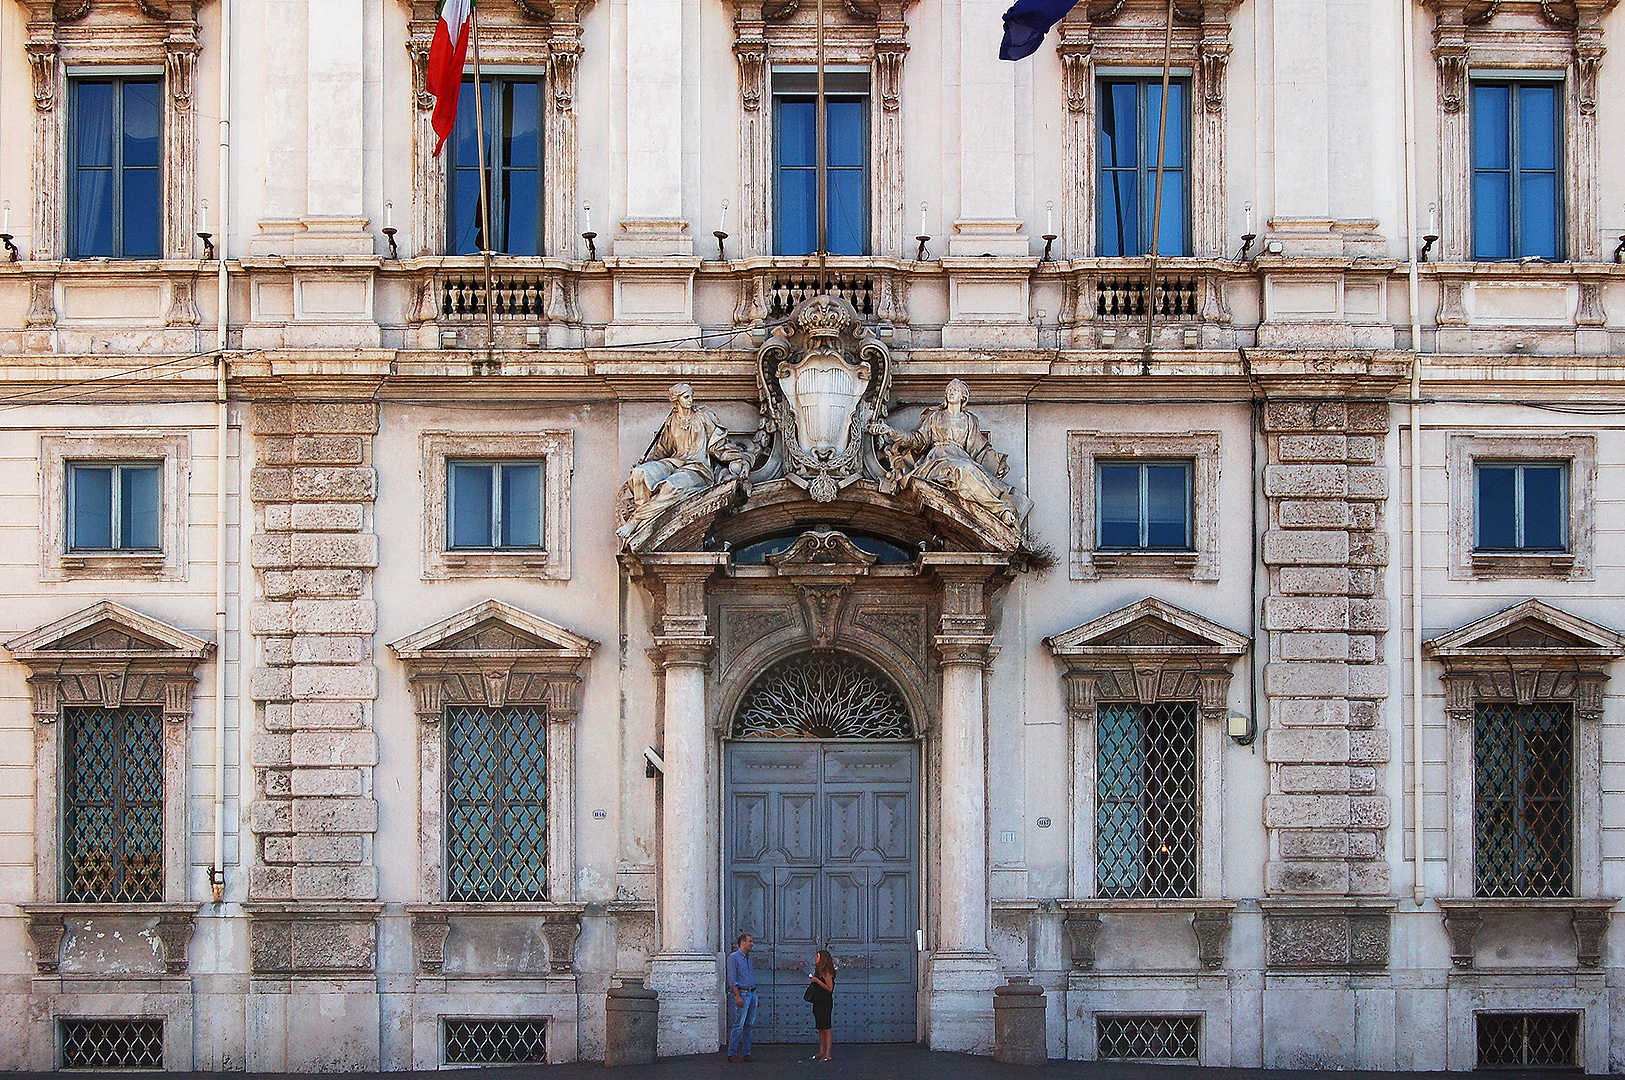 Palazzo della Consulta, Rome, Italië, Palazzo della Consulta, Rome, Italy